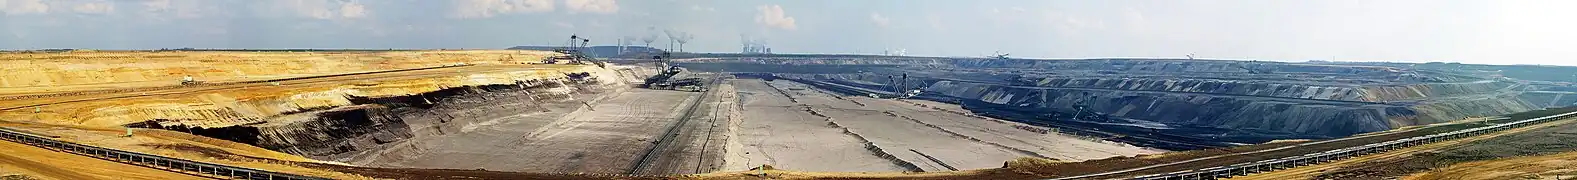 Mine à ciel ouvert : extraction de lignite à Garzweiler (Allemagne).